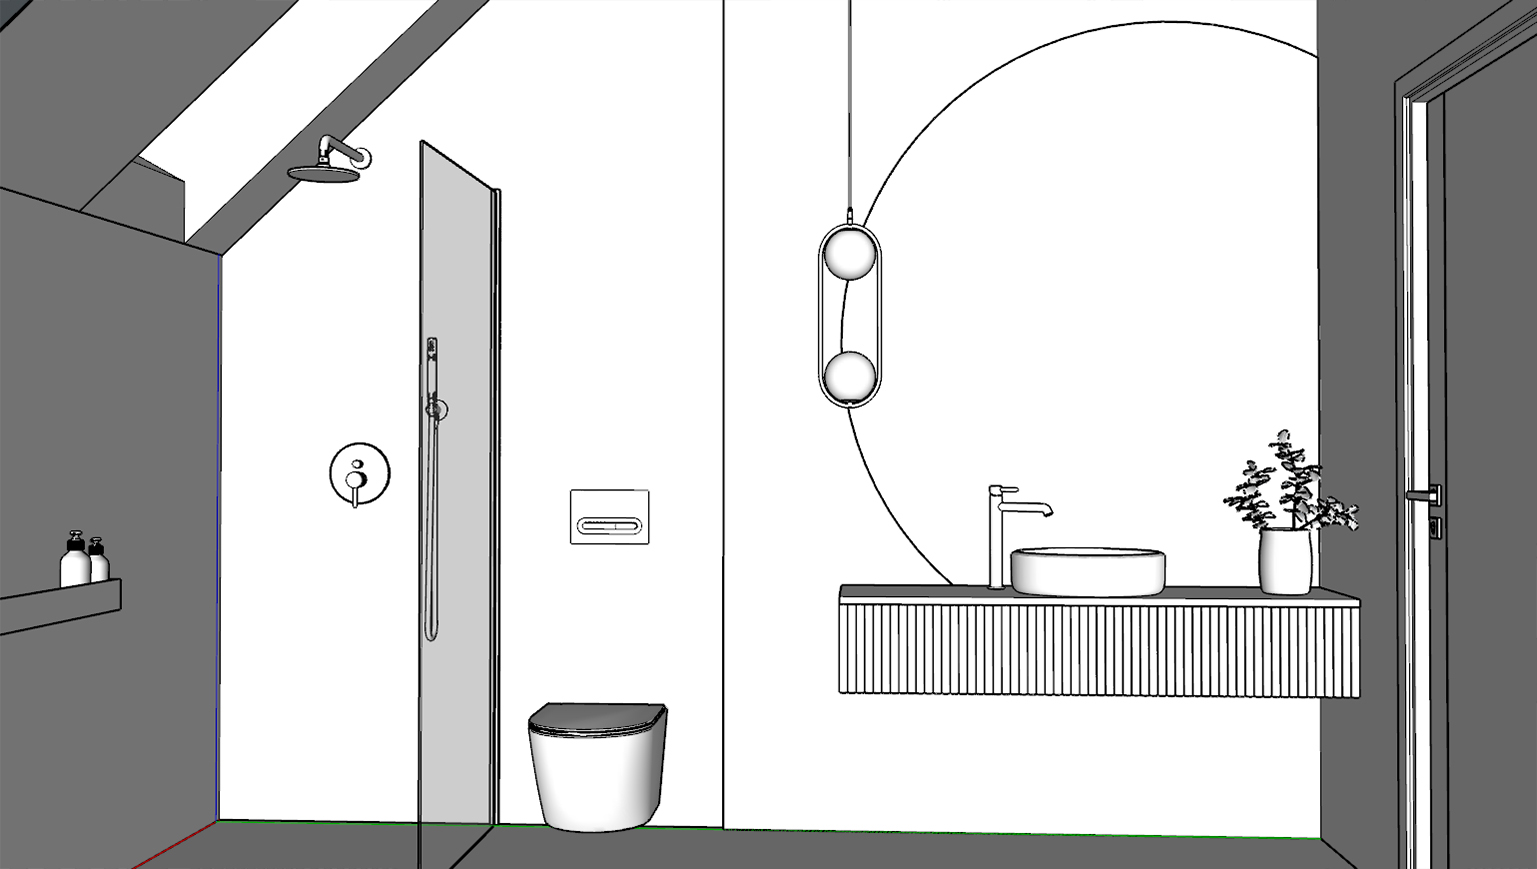 Wizualizacje kroku 2 – rysunki projektu łazienki w 3D bez kolorów.  Wykonanie Wizualizacje Wnętrz Sztejkowski w programie SketchUp.